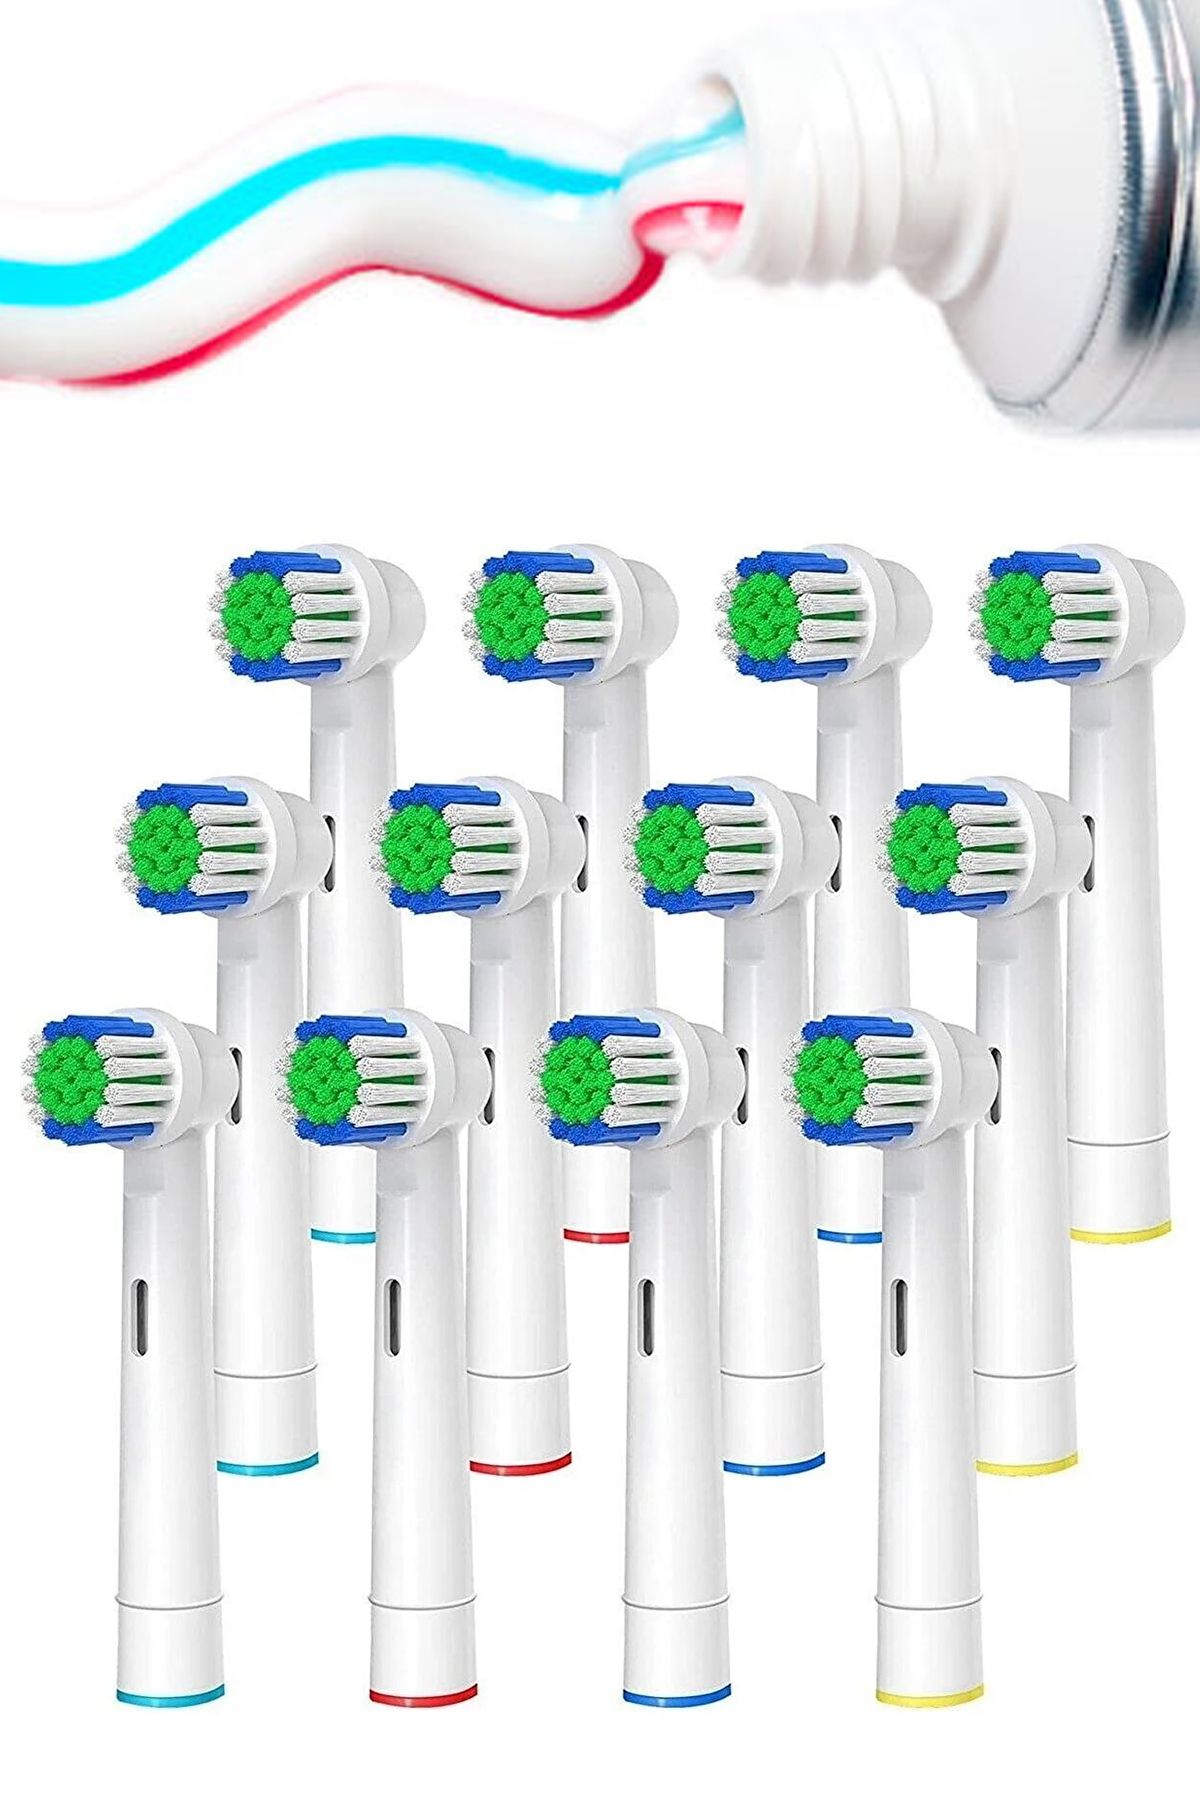 Factorial Şarjlı Elektrikli Diş Fırçaları (Braun Oral b) İle Uyumlu 12 Adet Dis Fırca Başlık Ağız Duşu